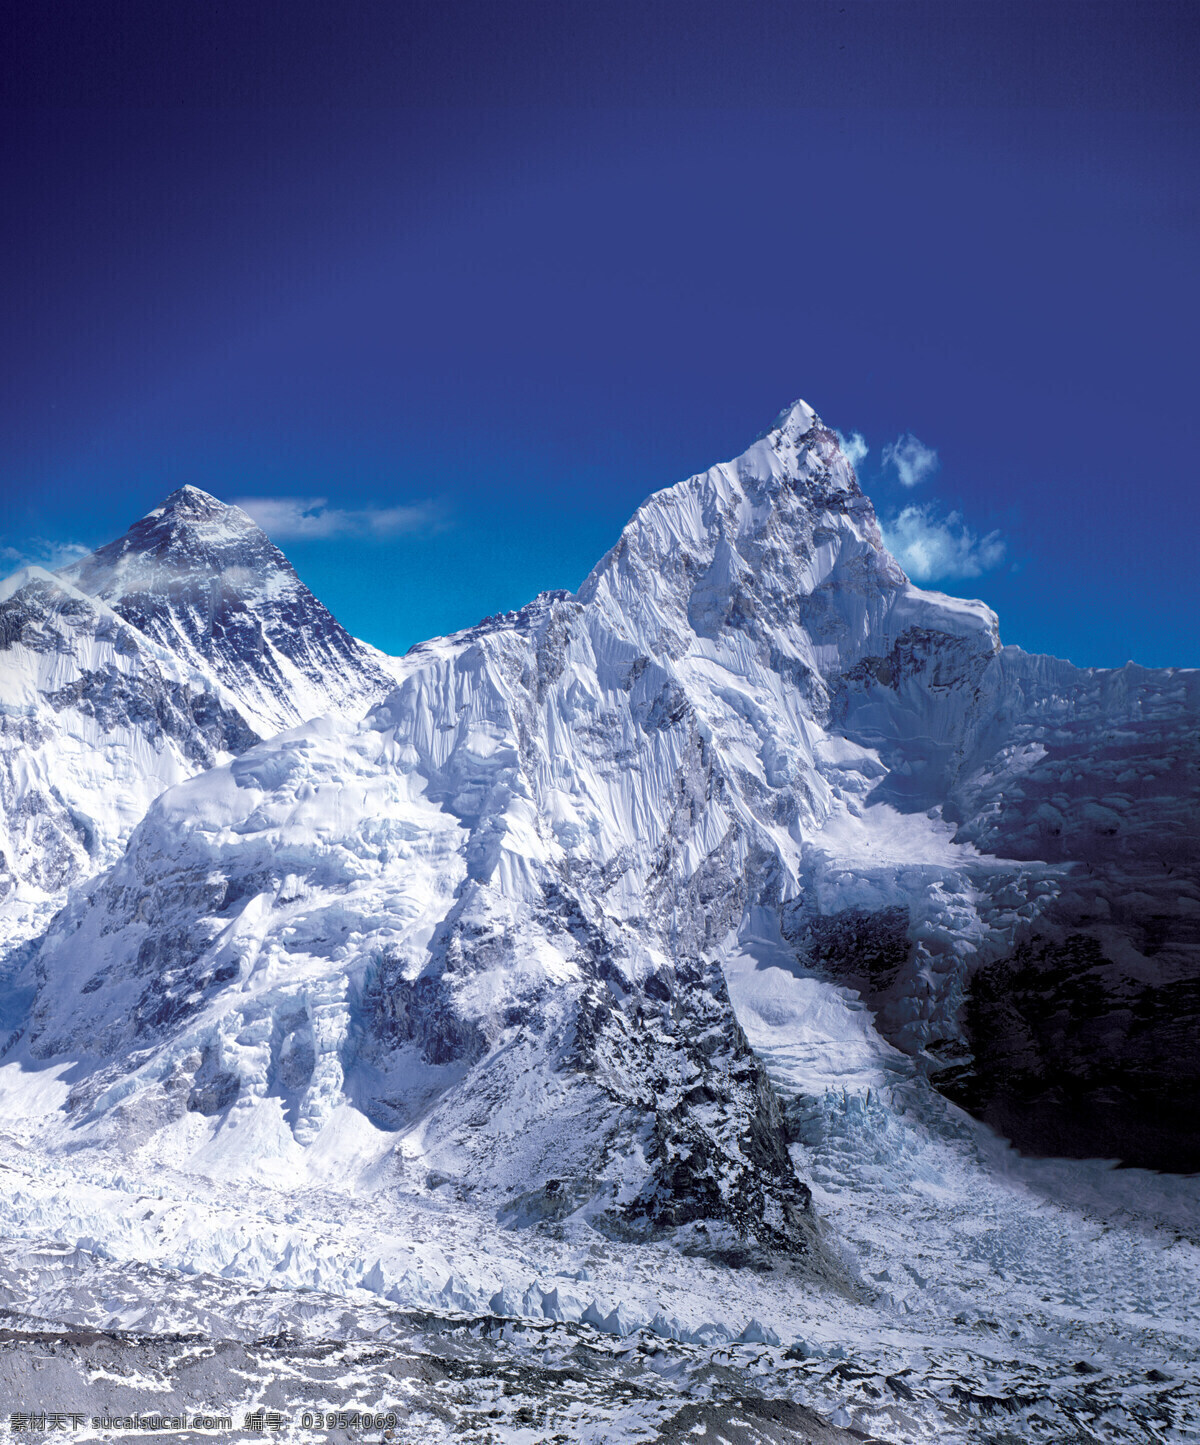 珠峰竖版 国内名山 珠穆朗玛峰 世界极景 高耸山峰 终年积雪 蓝天白云 无限风光 旅游摄影 自然风景 摄影图库